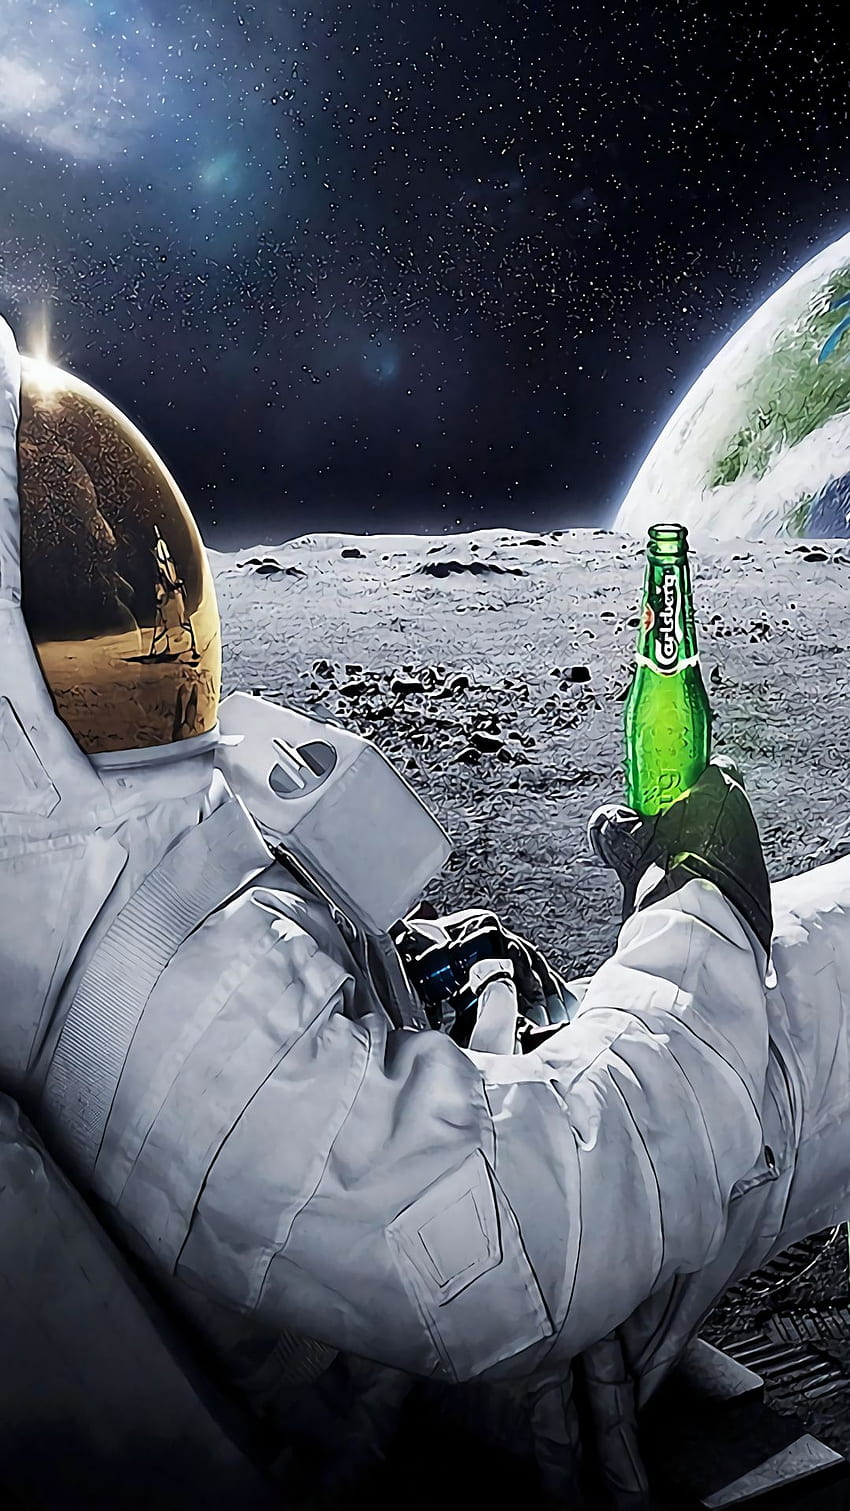 Idee per lo spazio e gli astronauti. , spazio, galassia, Astronauta che beve birra Sfondo del telefono HD